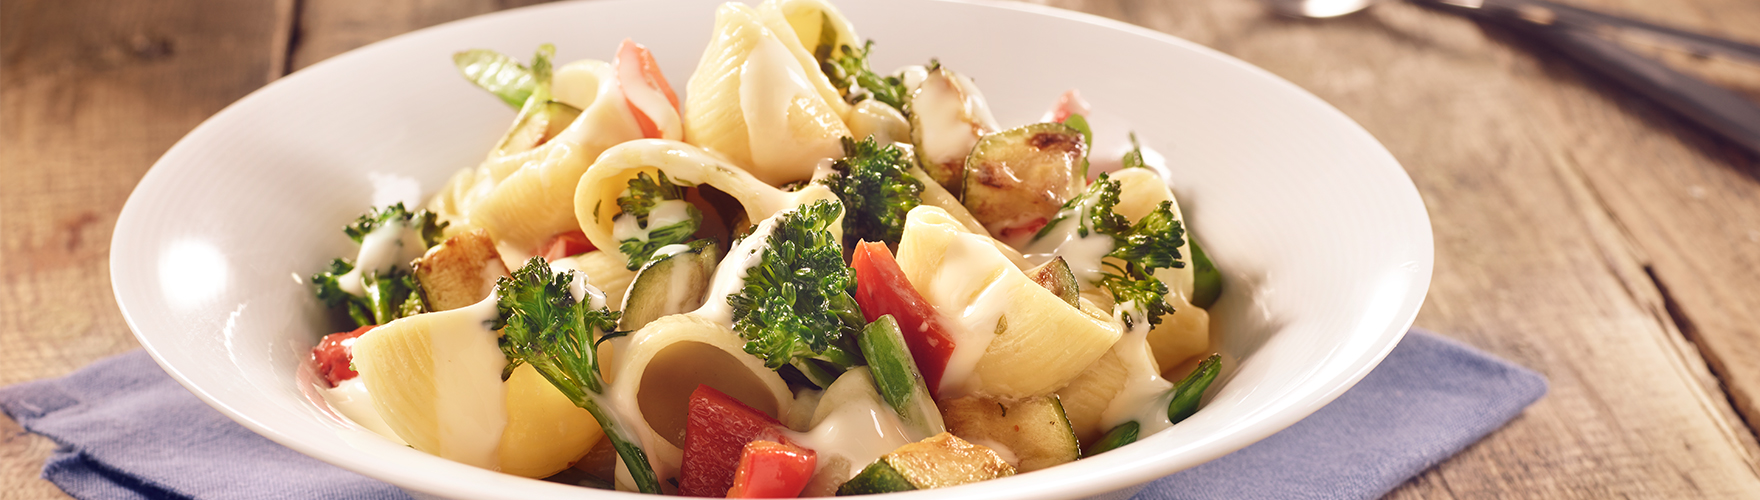 Conchas de pasta con brócoli, calabacín y pimiento con una salsa de ERU  Edam - Recept